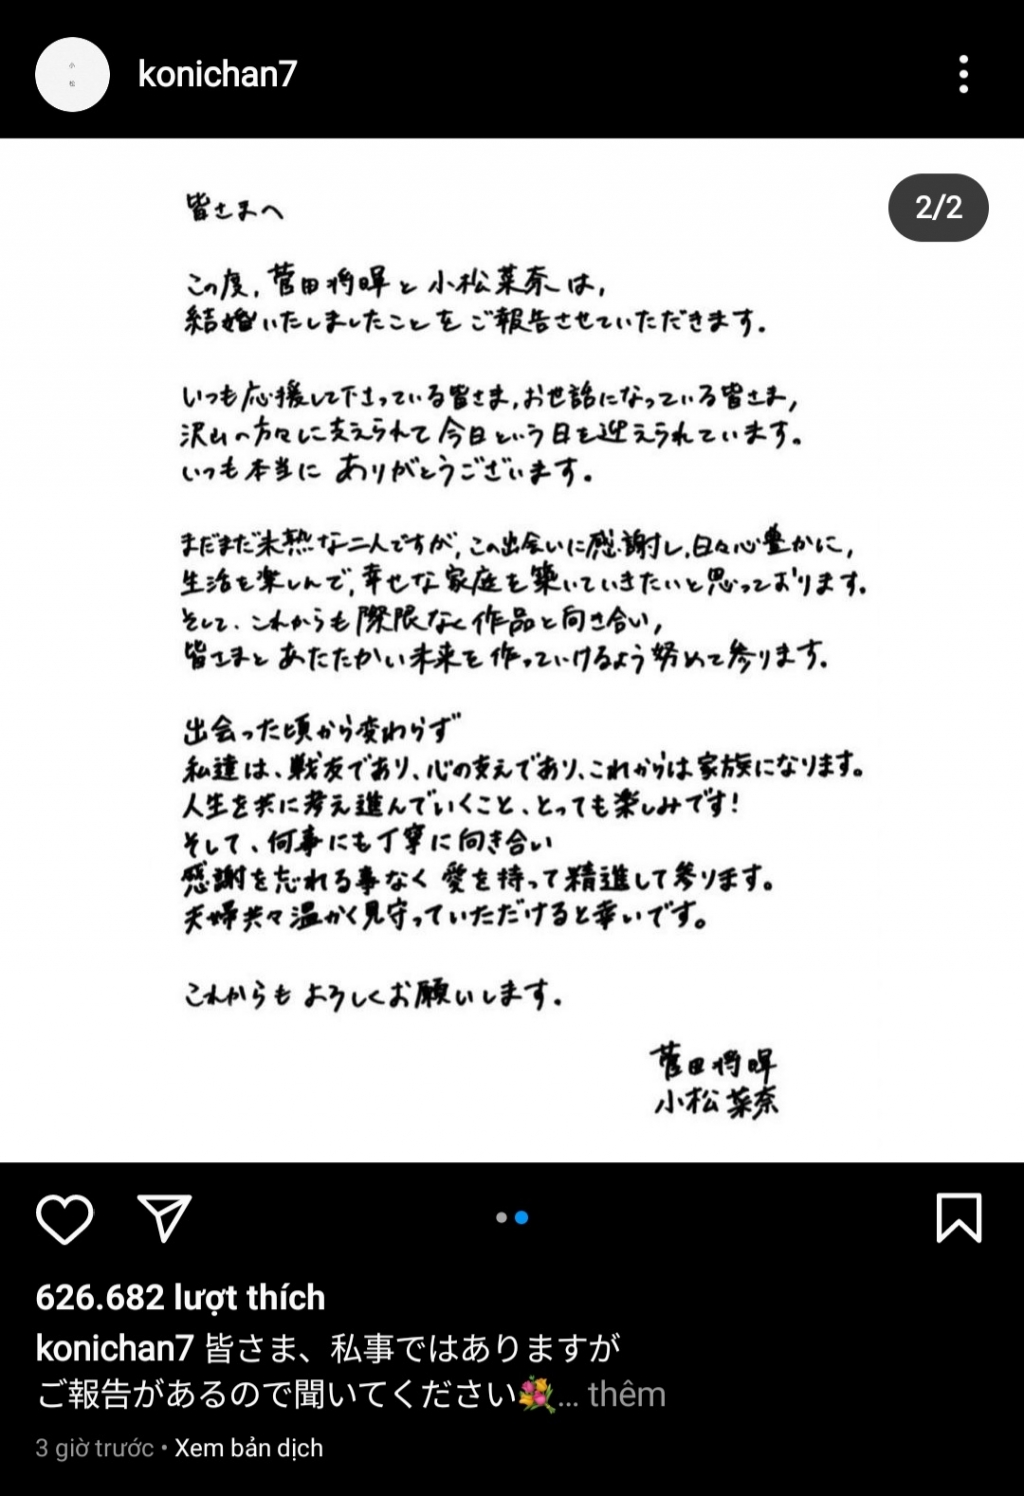 ‘Ngọc nữ’ Nhật Bản Nana Komatsu bất ngờ thông báo kết hôn